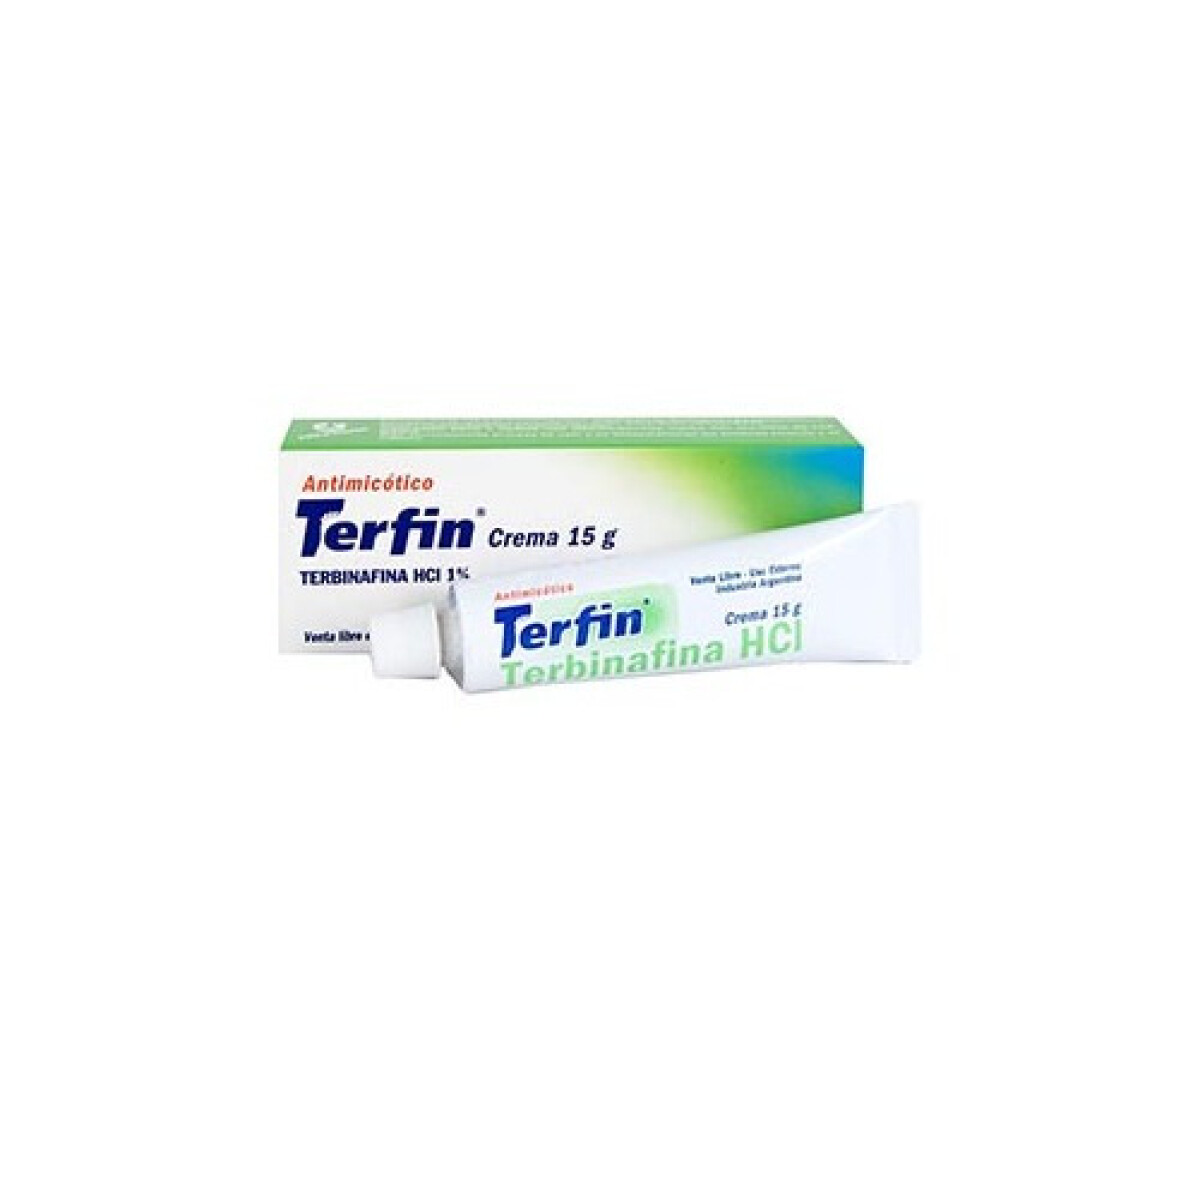 Terfin Crema 15 Mg. 